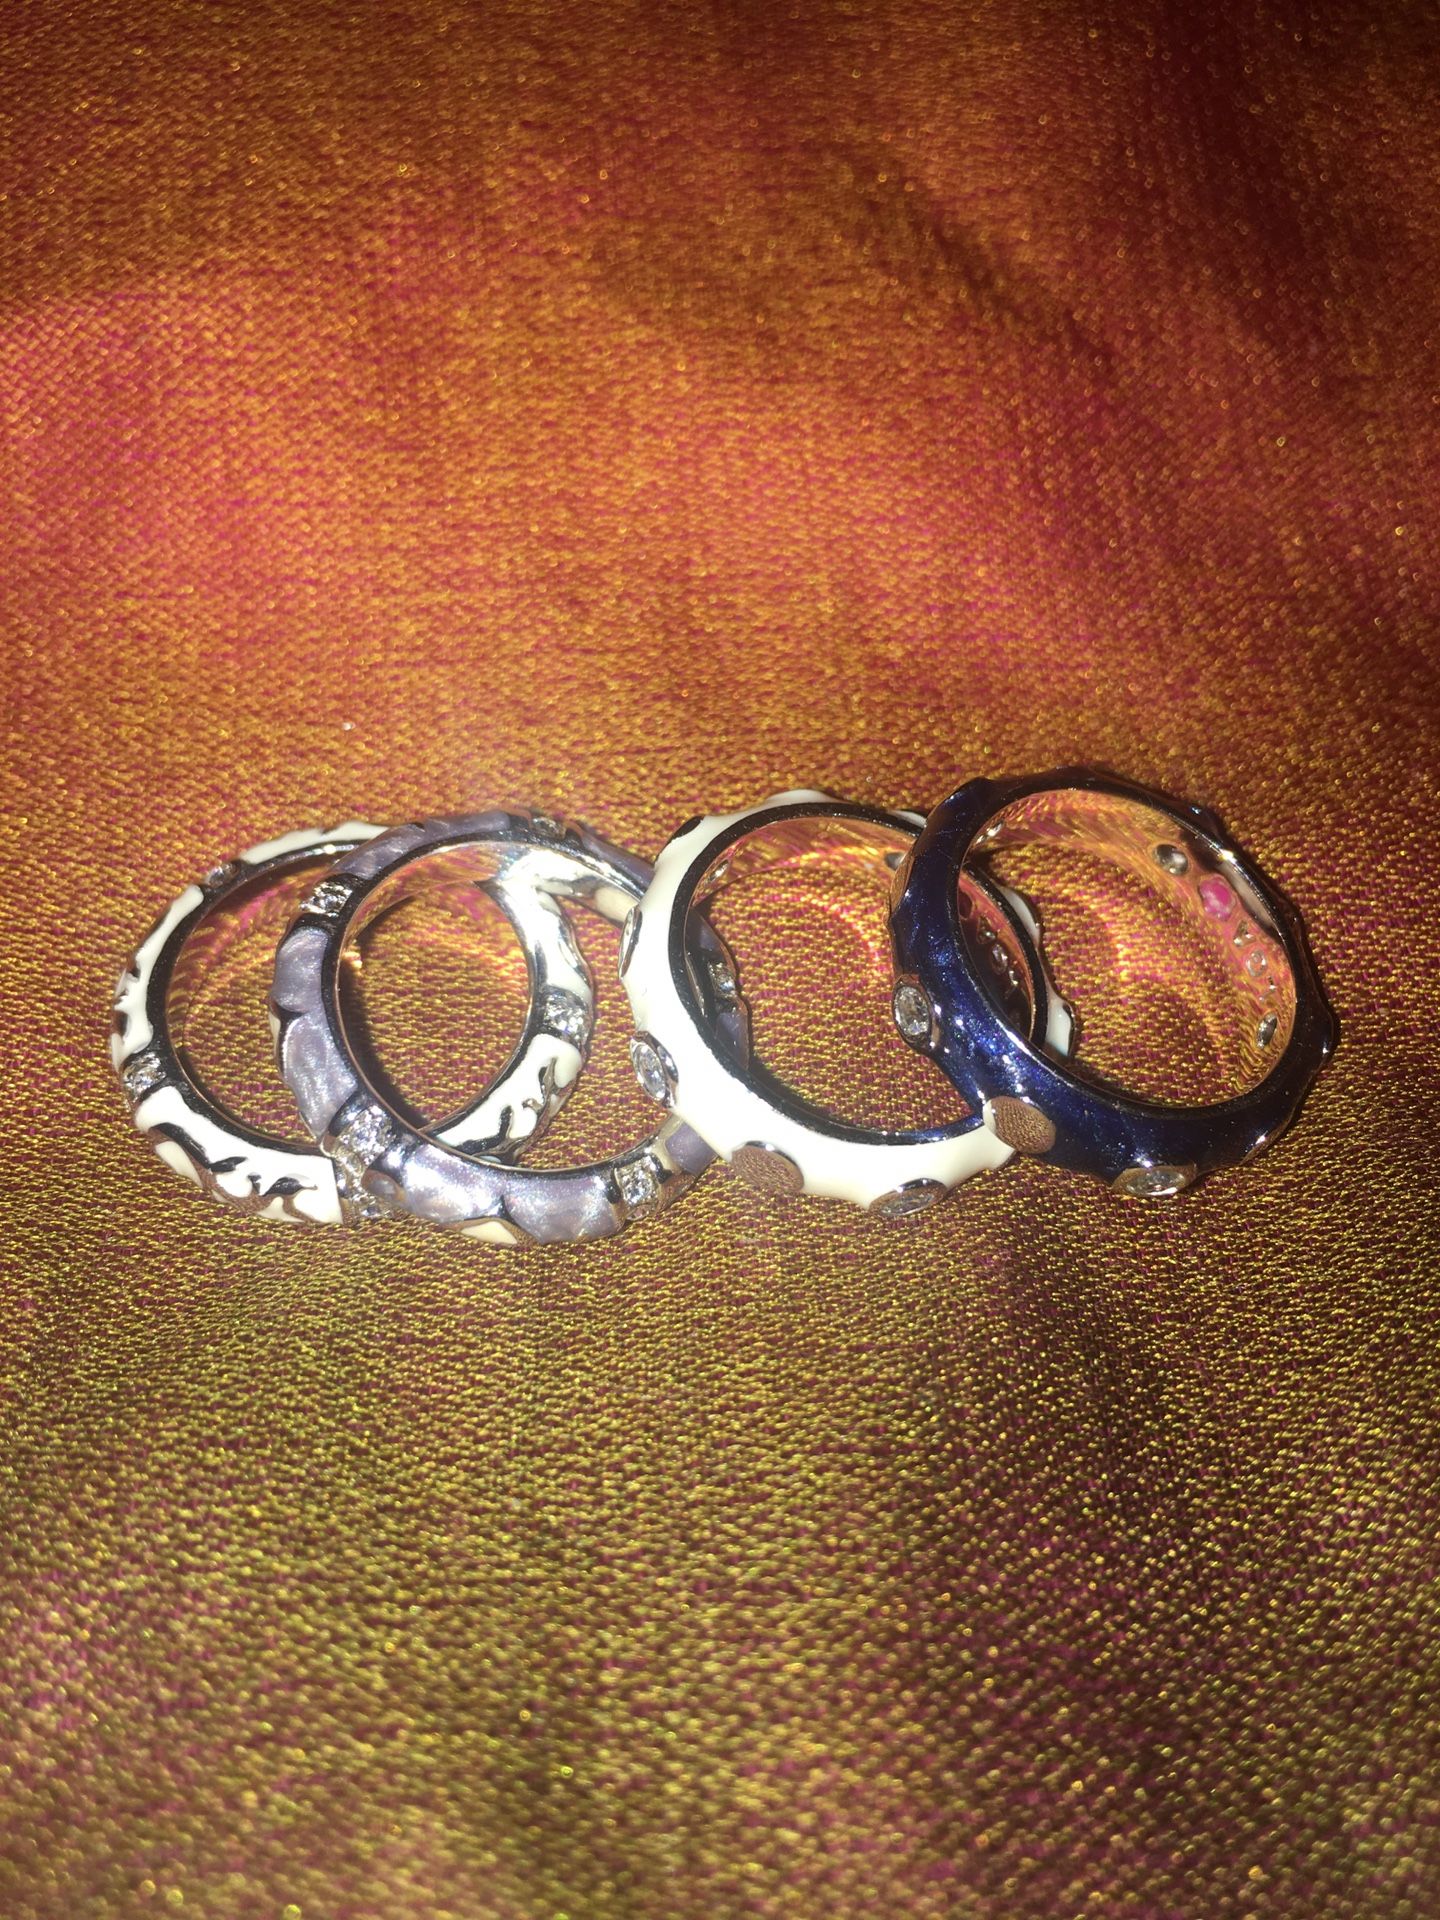 LGA rings